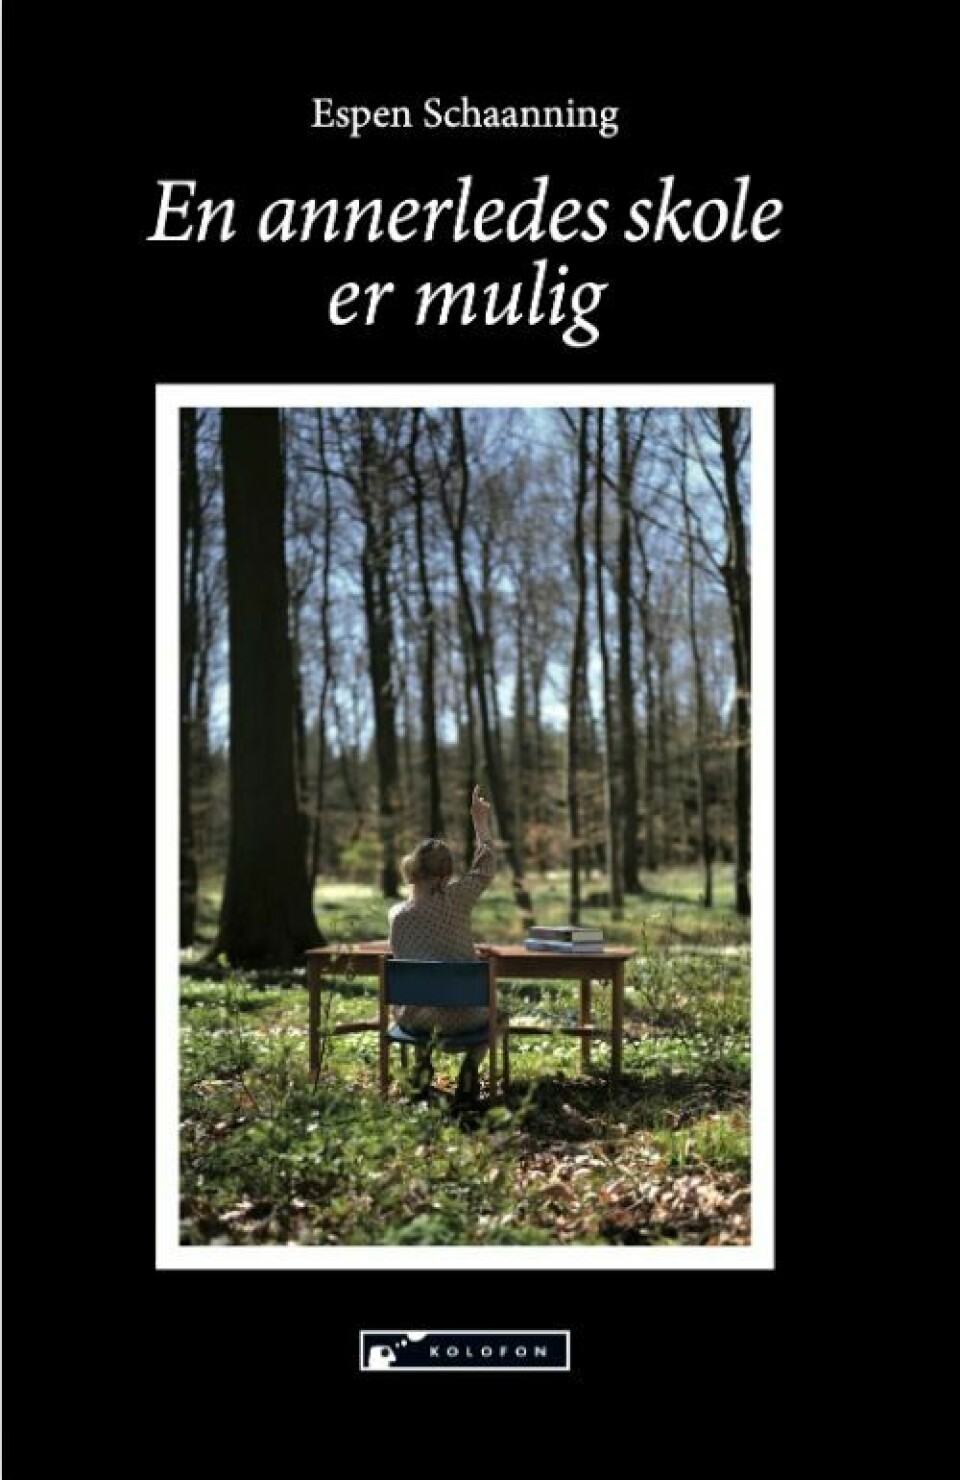 Espen Schaannings bok En annerledes skole er mulig (2022) er en samling bokanmeldelser han har skrevet tidligere.